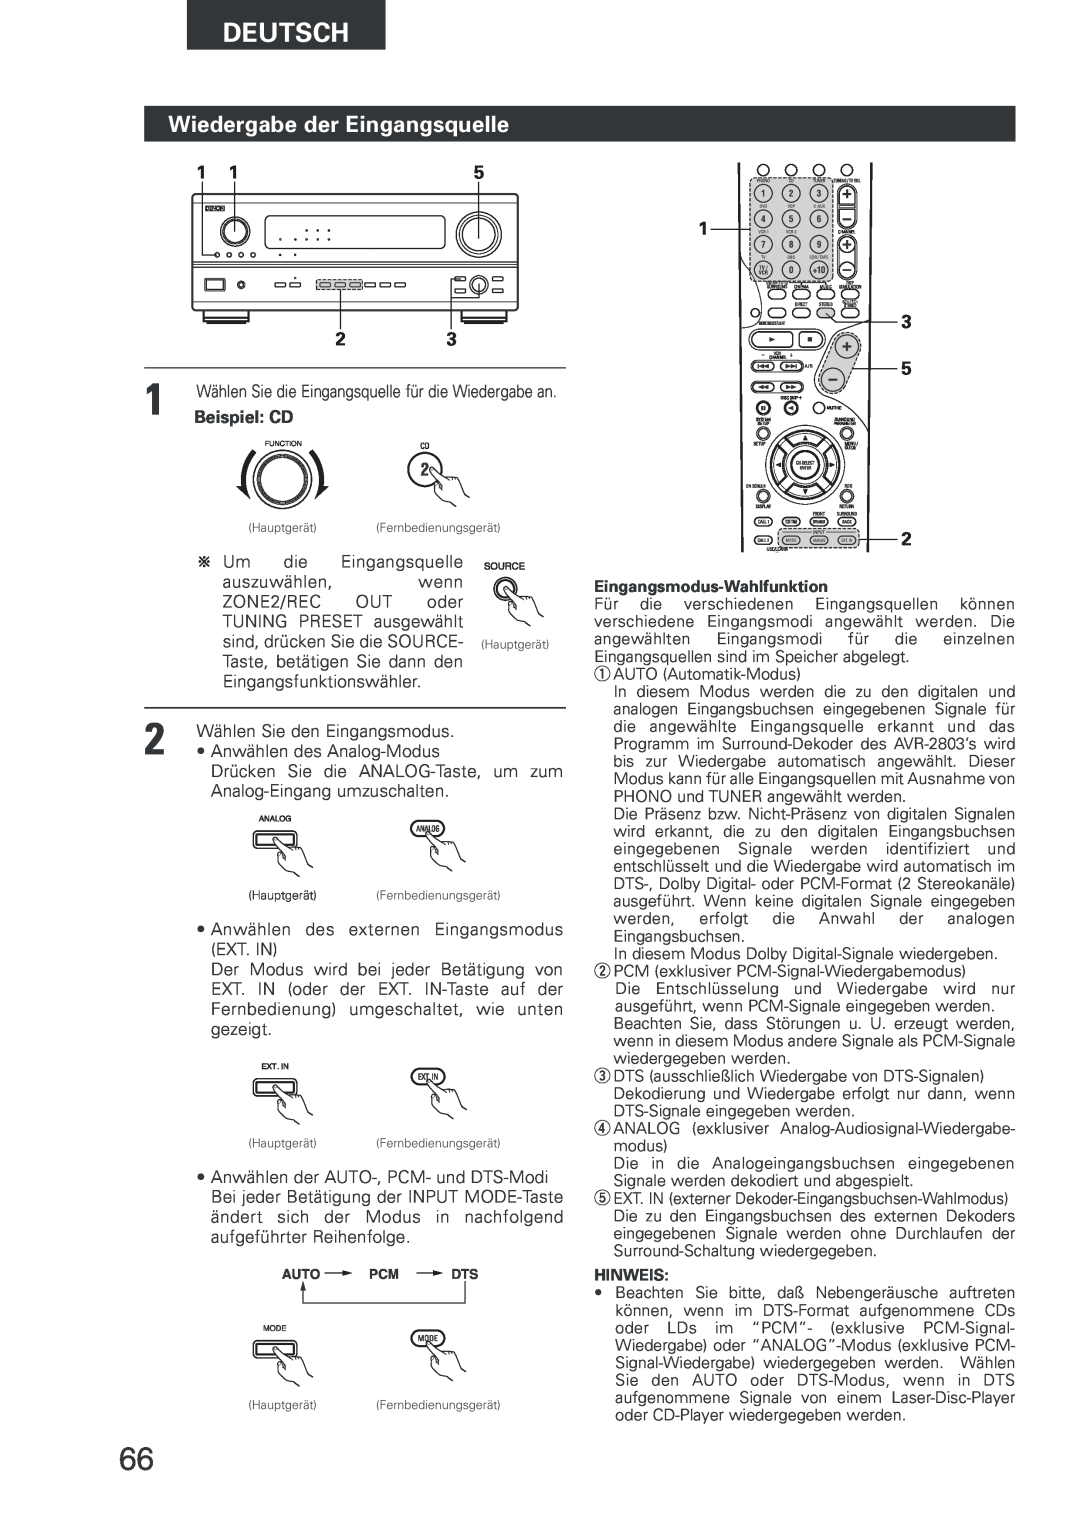 Denon AVR-2803 manual Wiedergabe der Eingangsquelle, Beispiel CD, Deutsch 